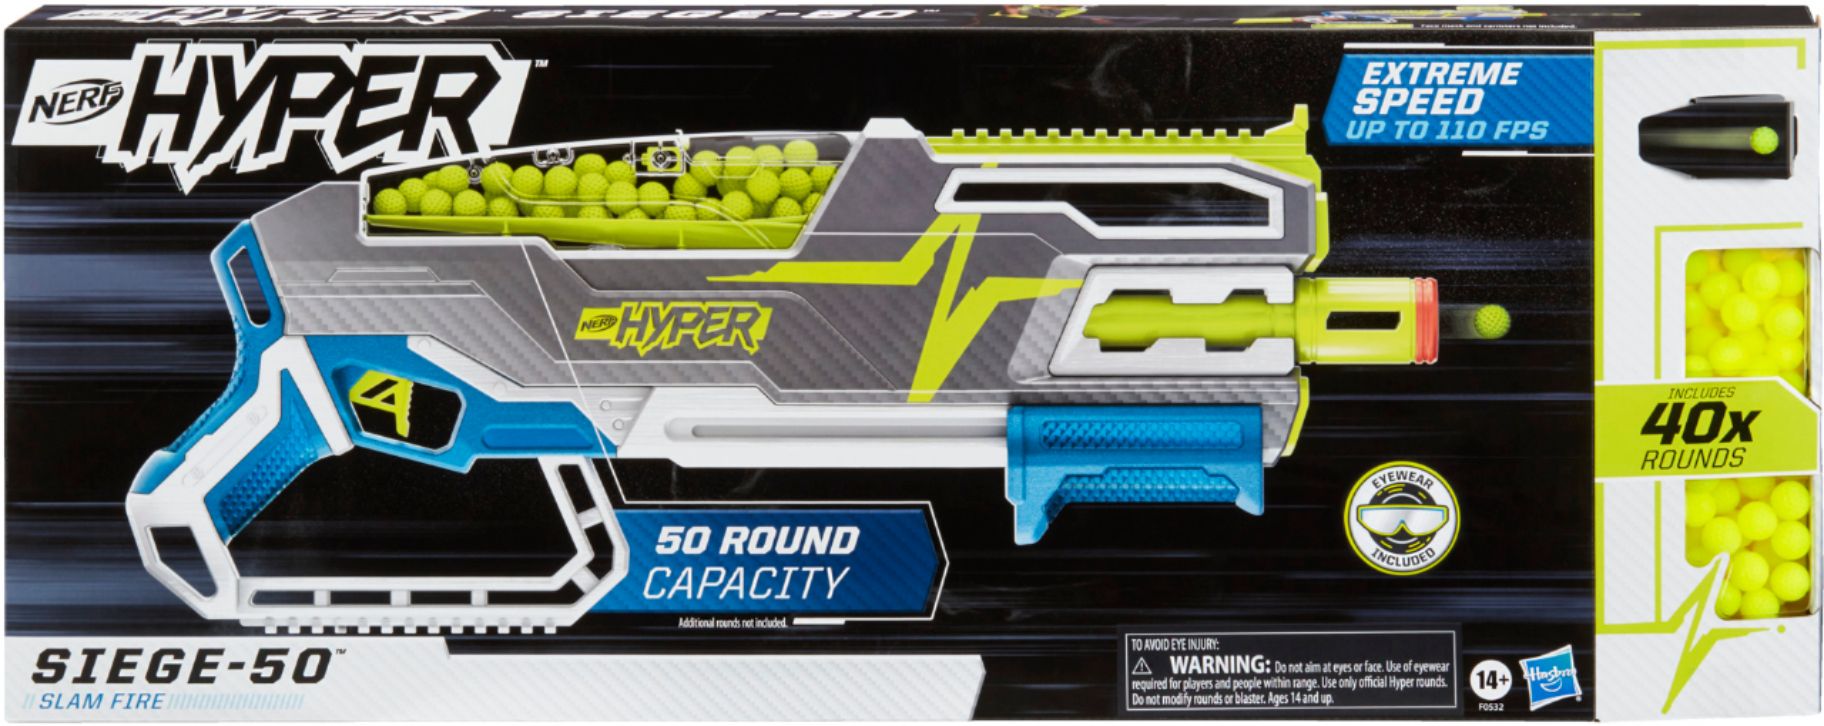 Nerf Hyper Bundle, Siege-50 Pump-Action Blaster, 65 Nerf Hyper Rounds